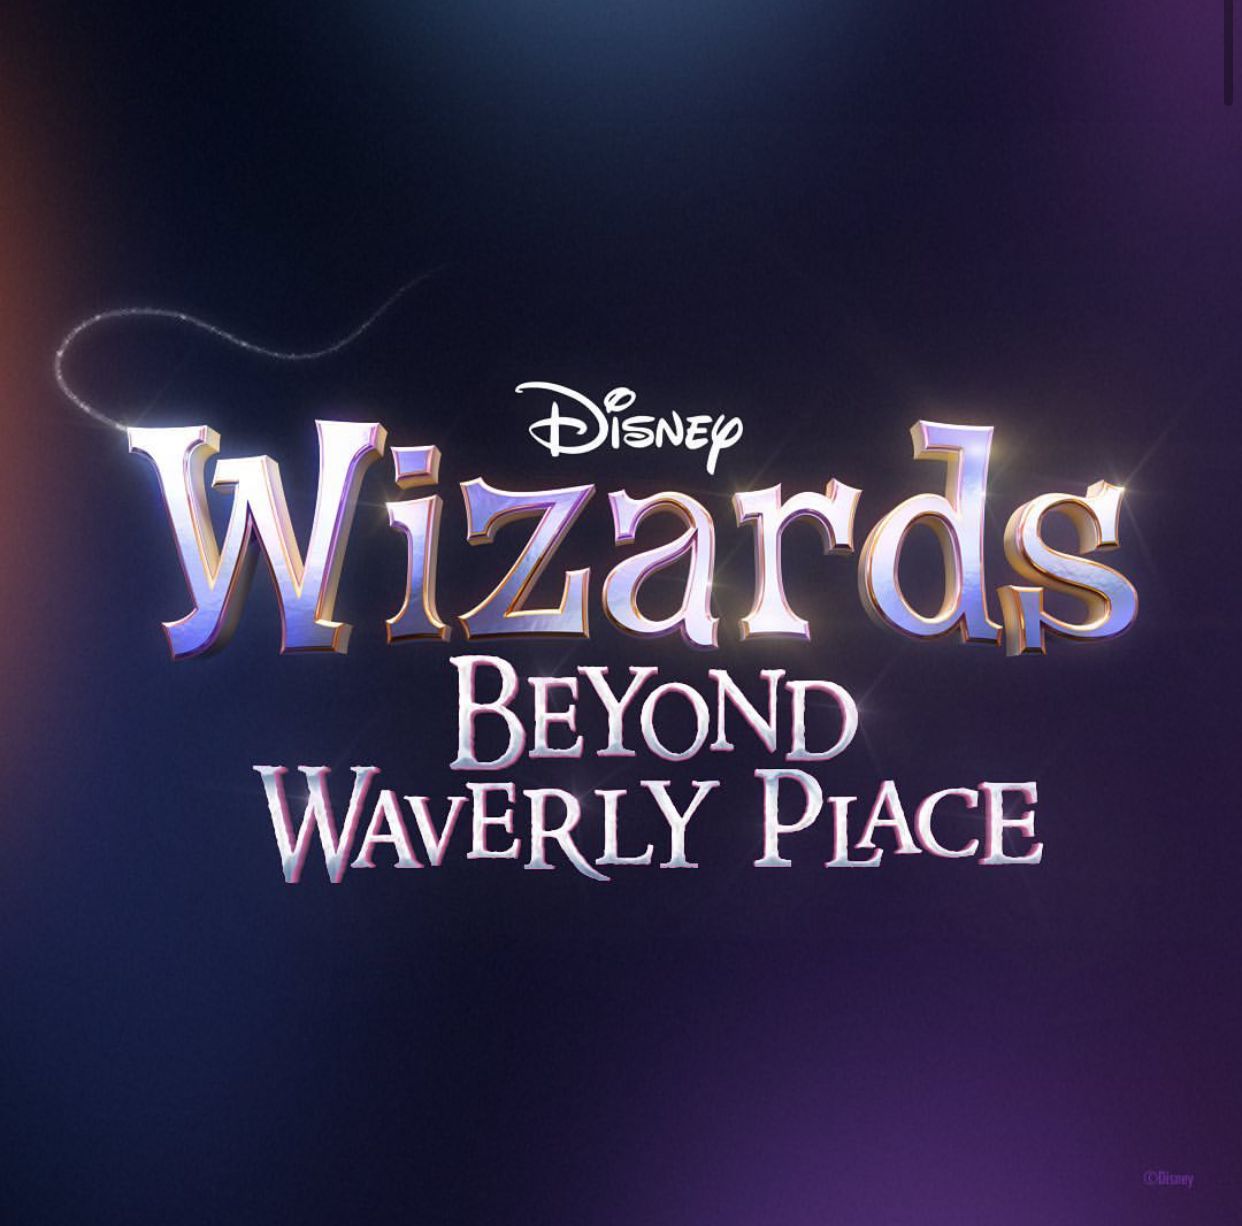 Fundo em roxo azulado mostra os dizeres "Wizards Beyond Waverly Place"